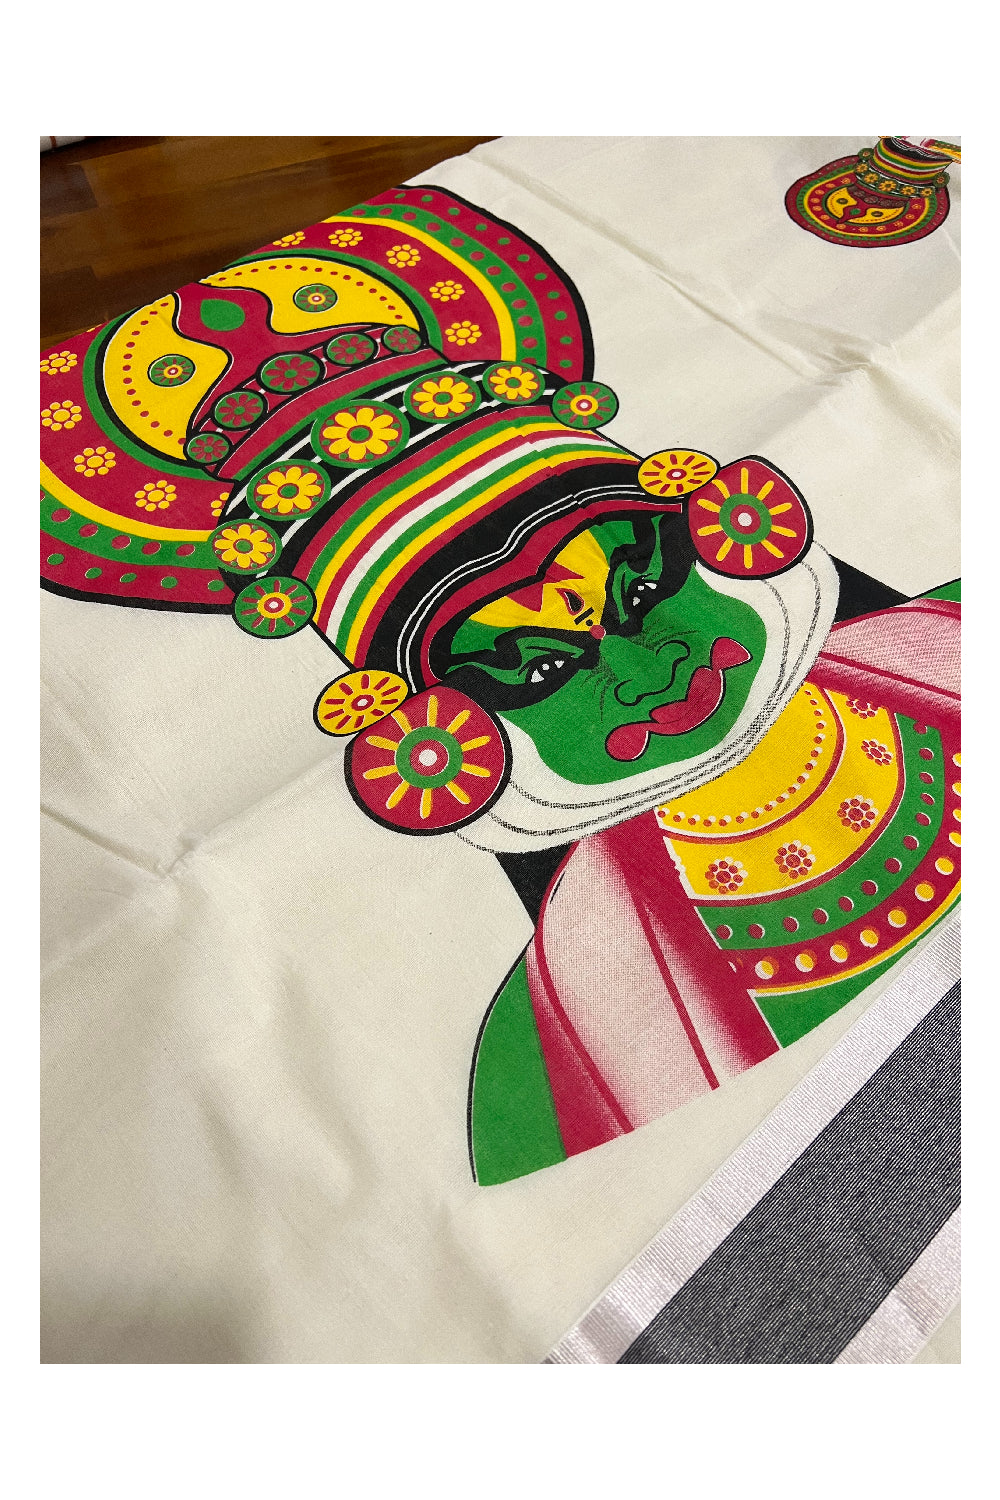 Kerala Pure Cotton Silver Kasavu Saree with Kathakali Face Printed and Black Border